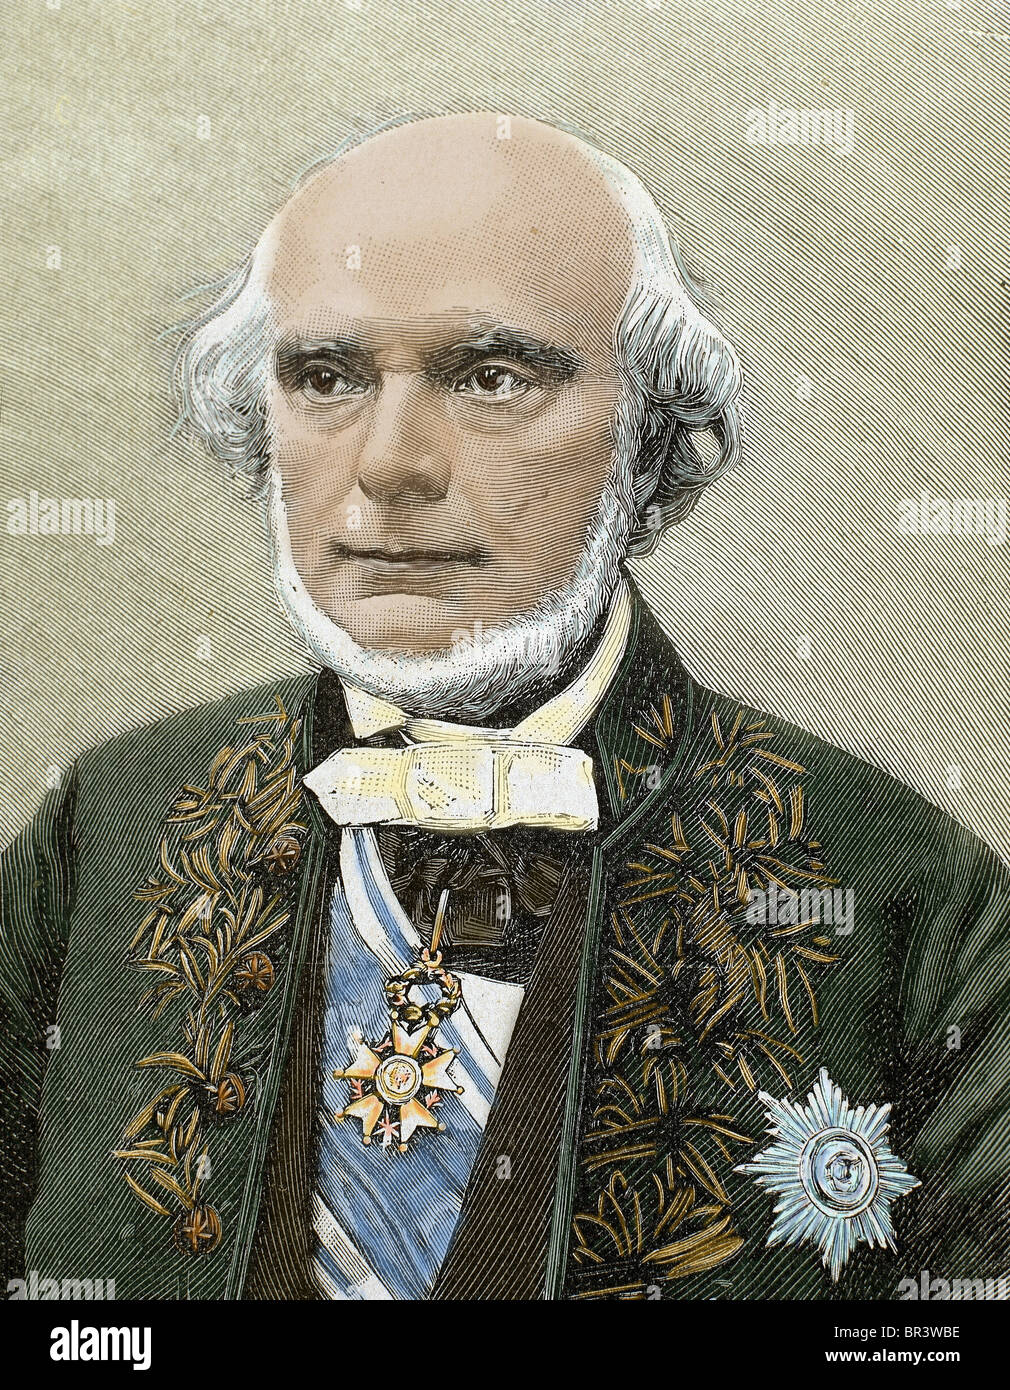 Armand de Quatrefages de Bréau, Jean-Louis (1810-1892). Französischer Naturforscher und Ethnologe. Gravur. Farbige Gravur. Stockfoto